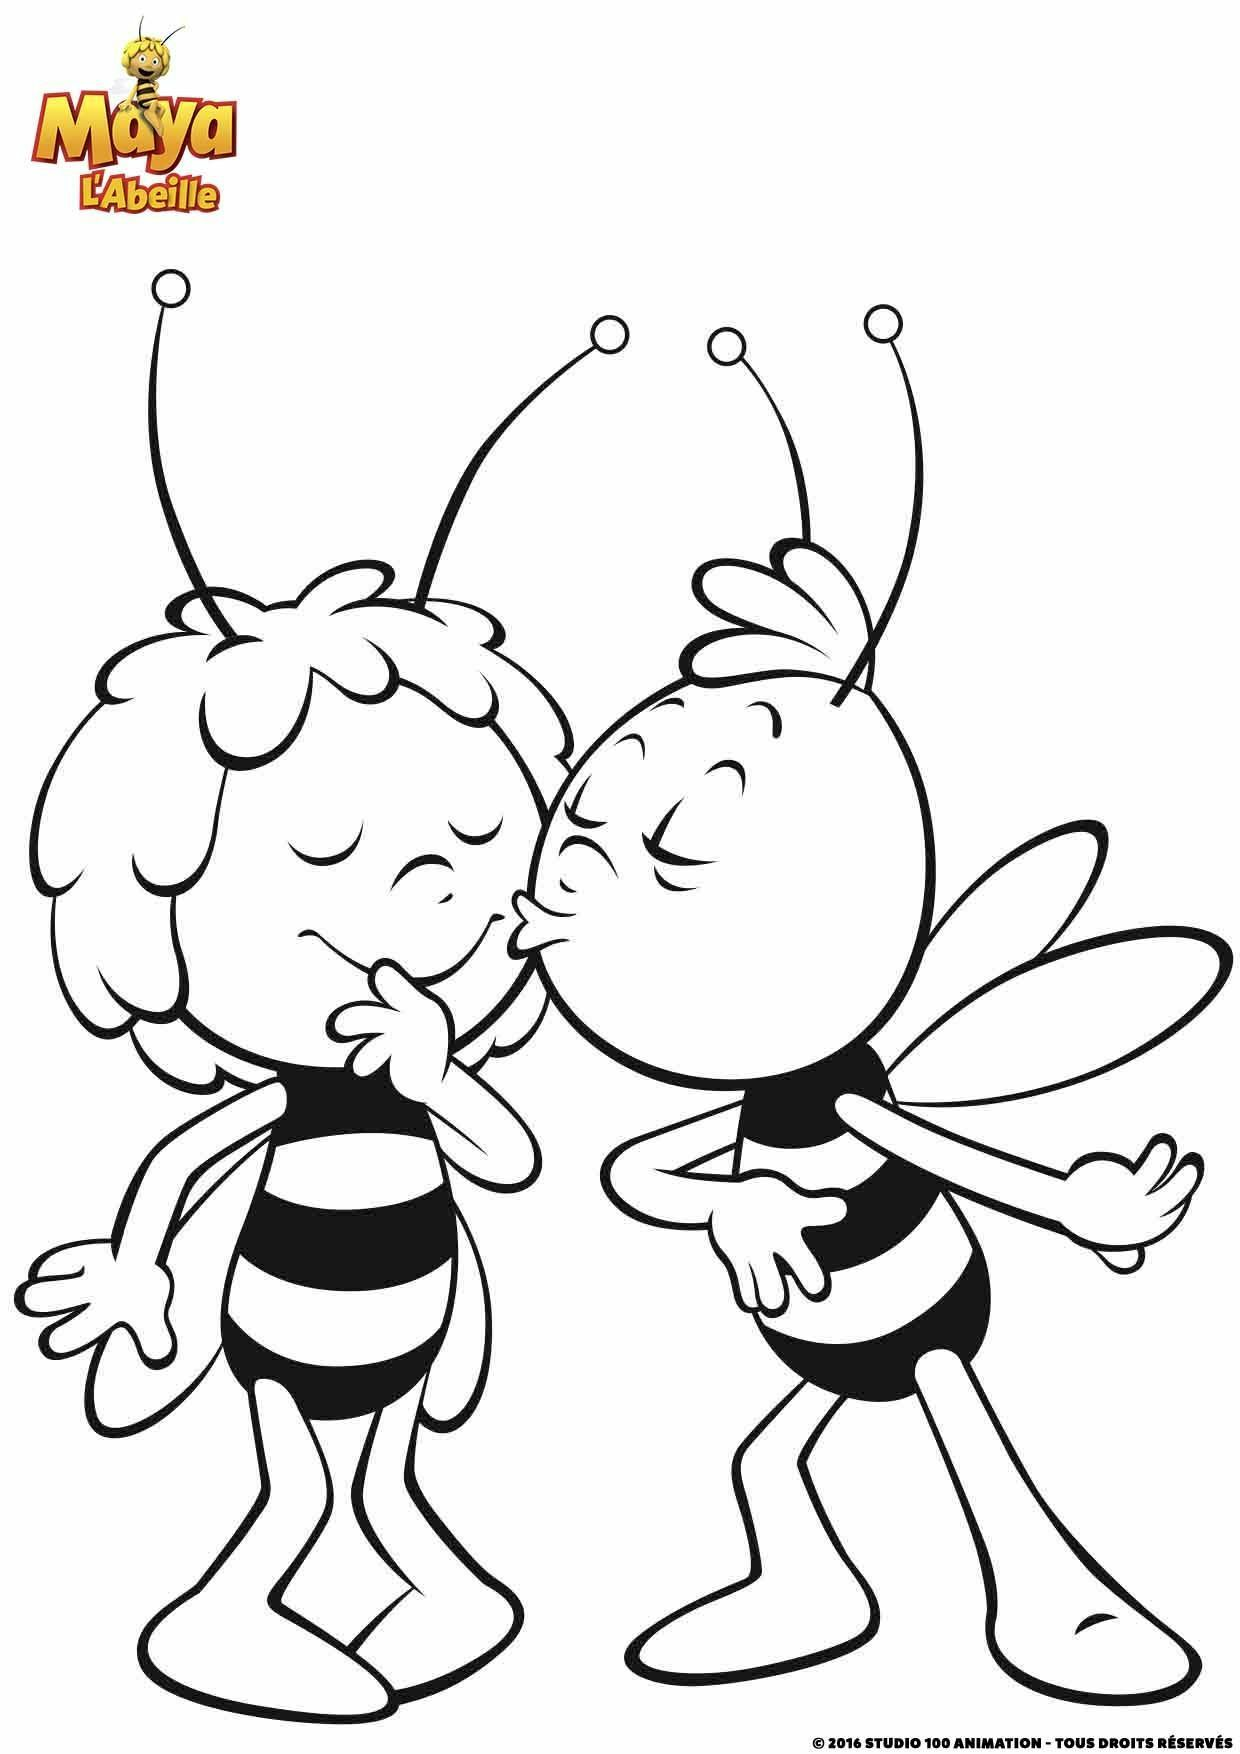   Le bisou de Willy, deux abeilles en vol 